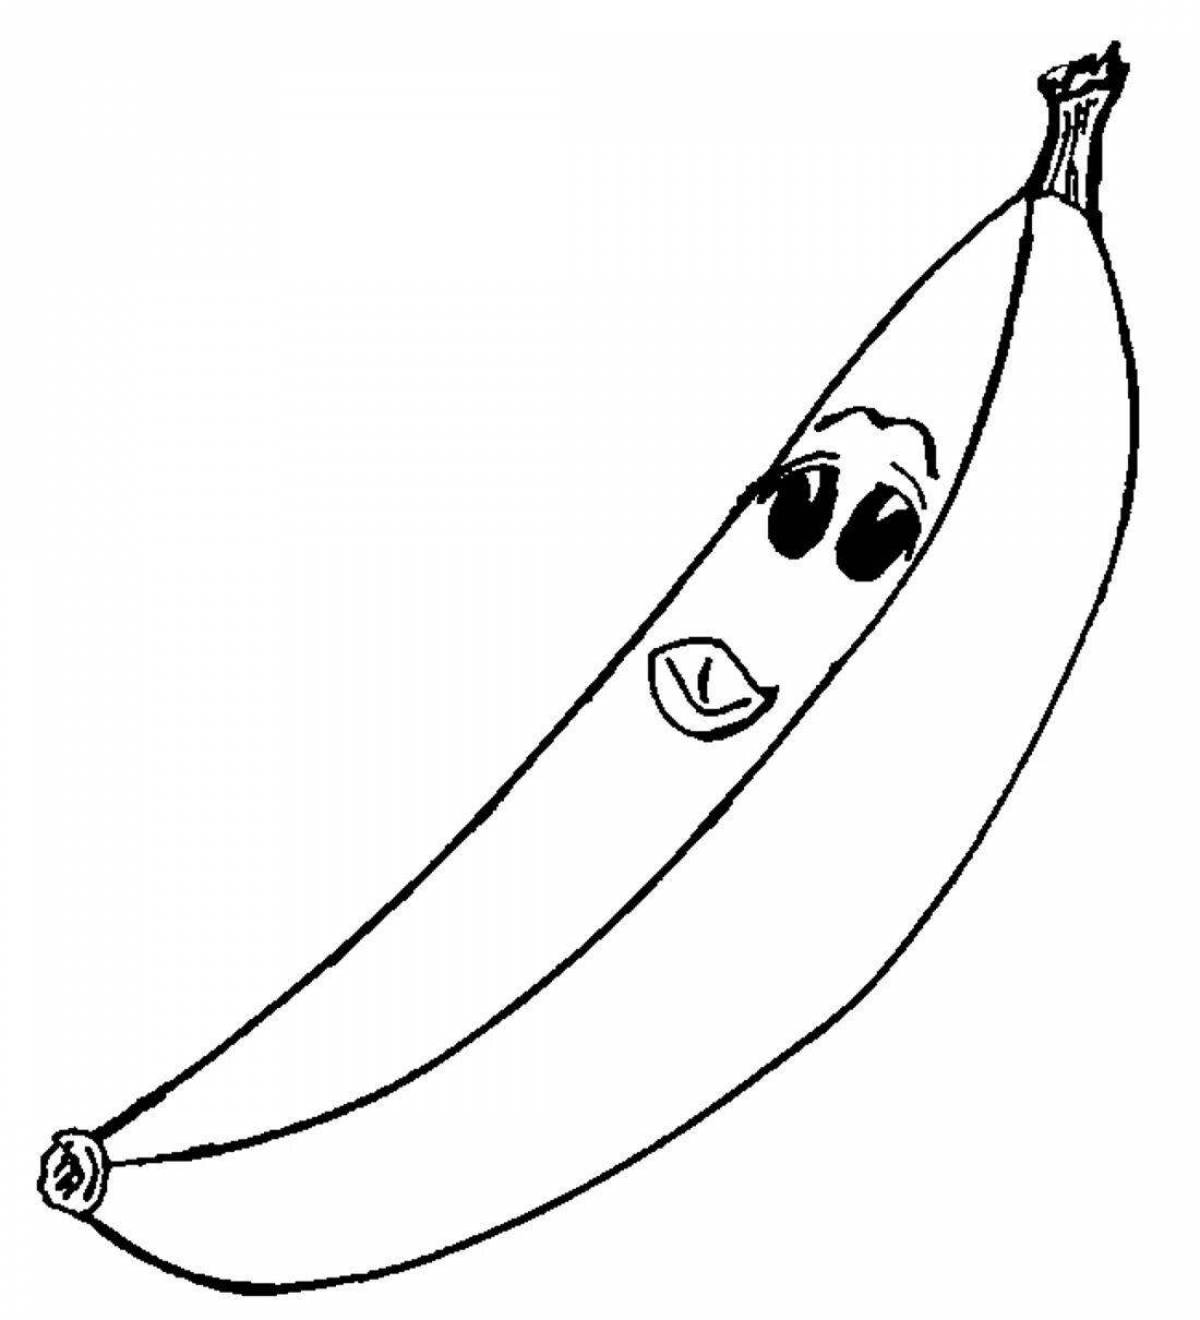 Sunny banana drawing